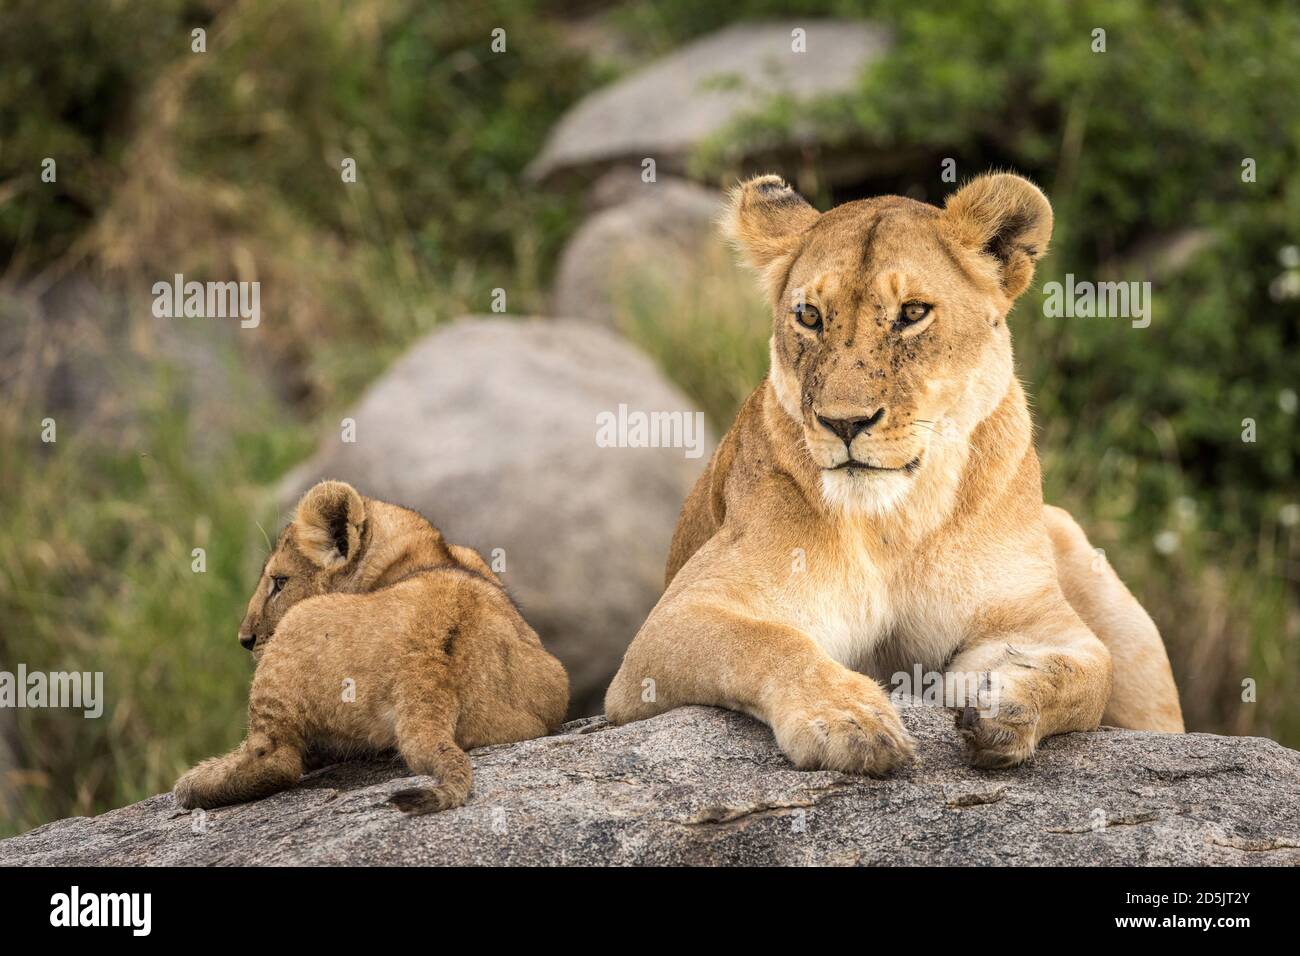 La lionne féminine et son lion cub allongé sur un grand rock avec buisson vert en arrière-plan à Serengeti in Tanzanie Banque D'Images